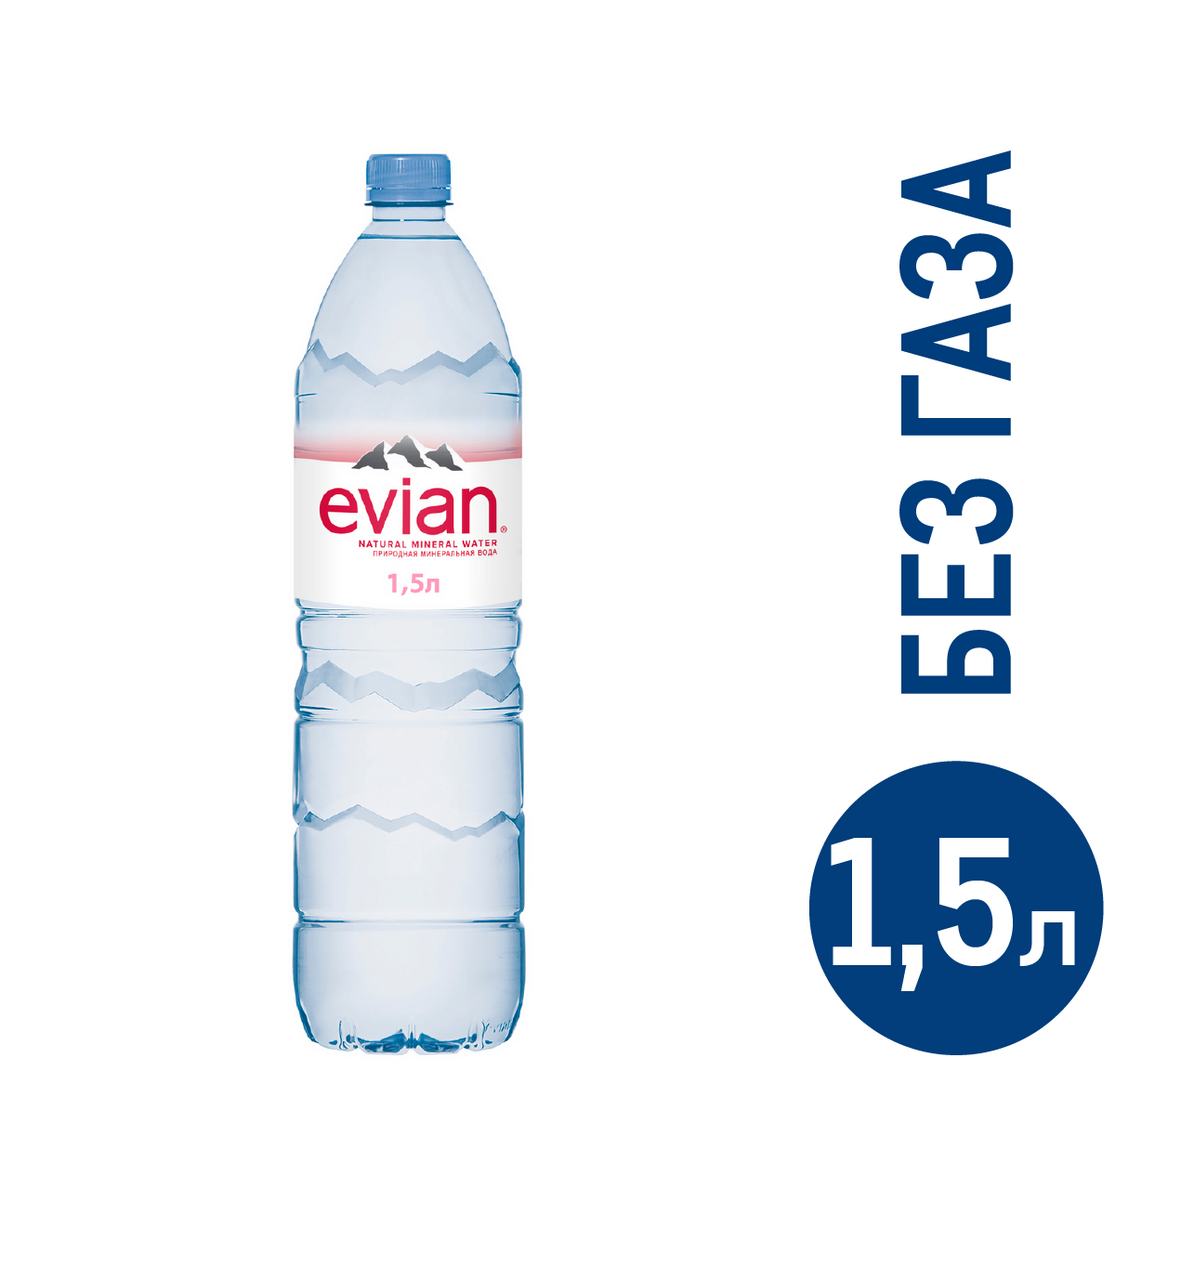 Вода Evian негазированная, 1.5л  с доставкой на дом, цены в .